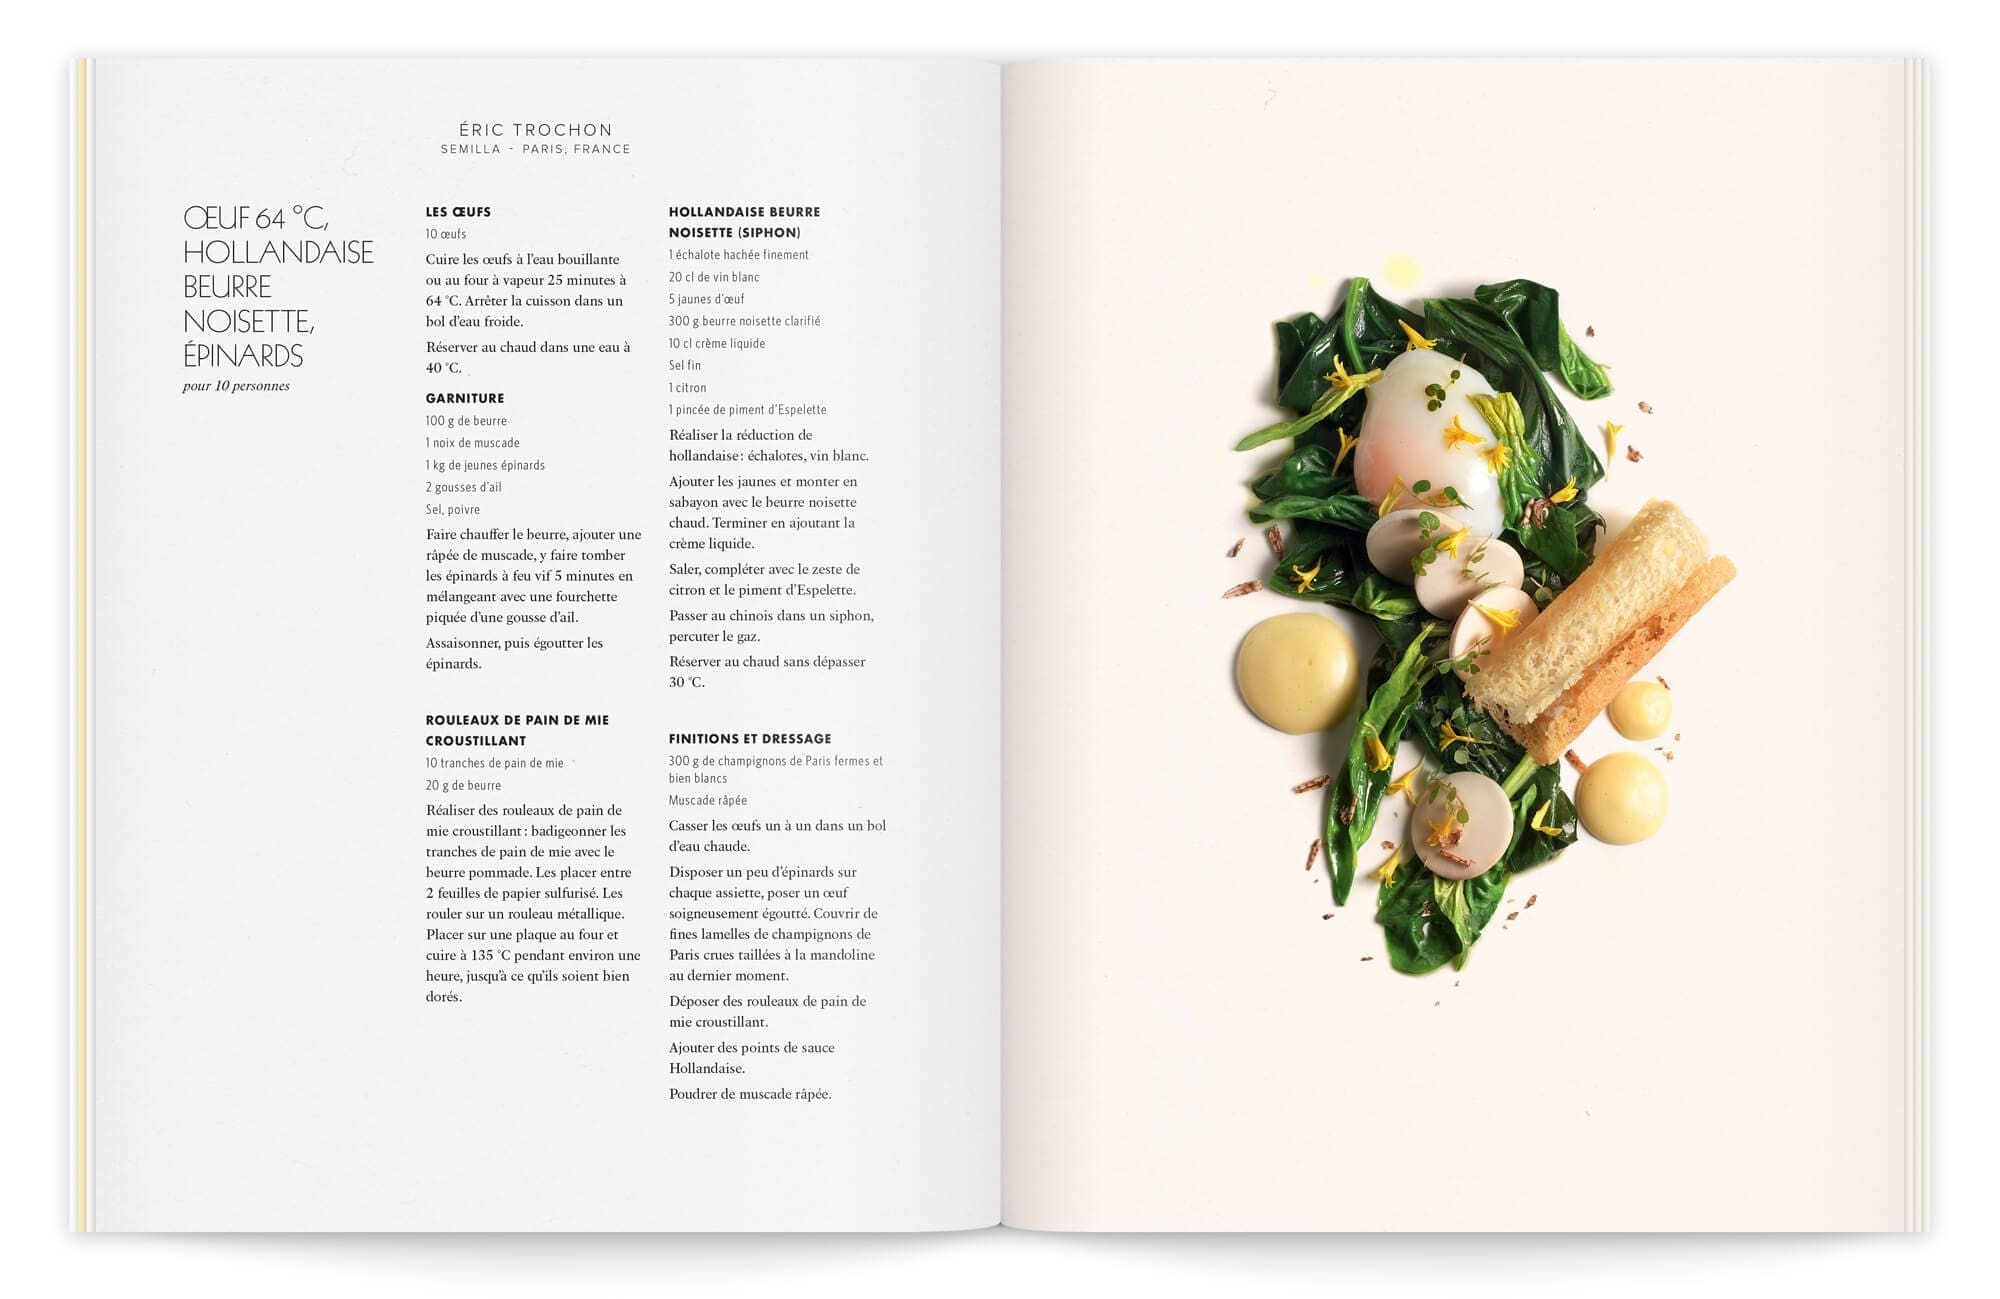 photographie culinaire par peter lippmann et stylisme de garlone bardel pour sublimer le visuel de la recette d'éric trochon